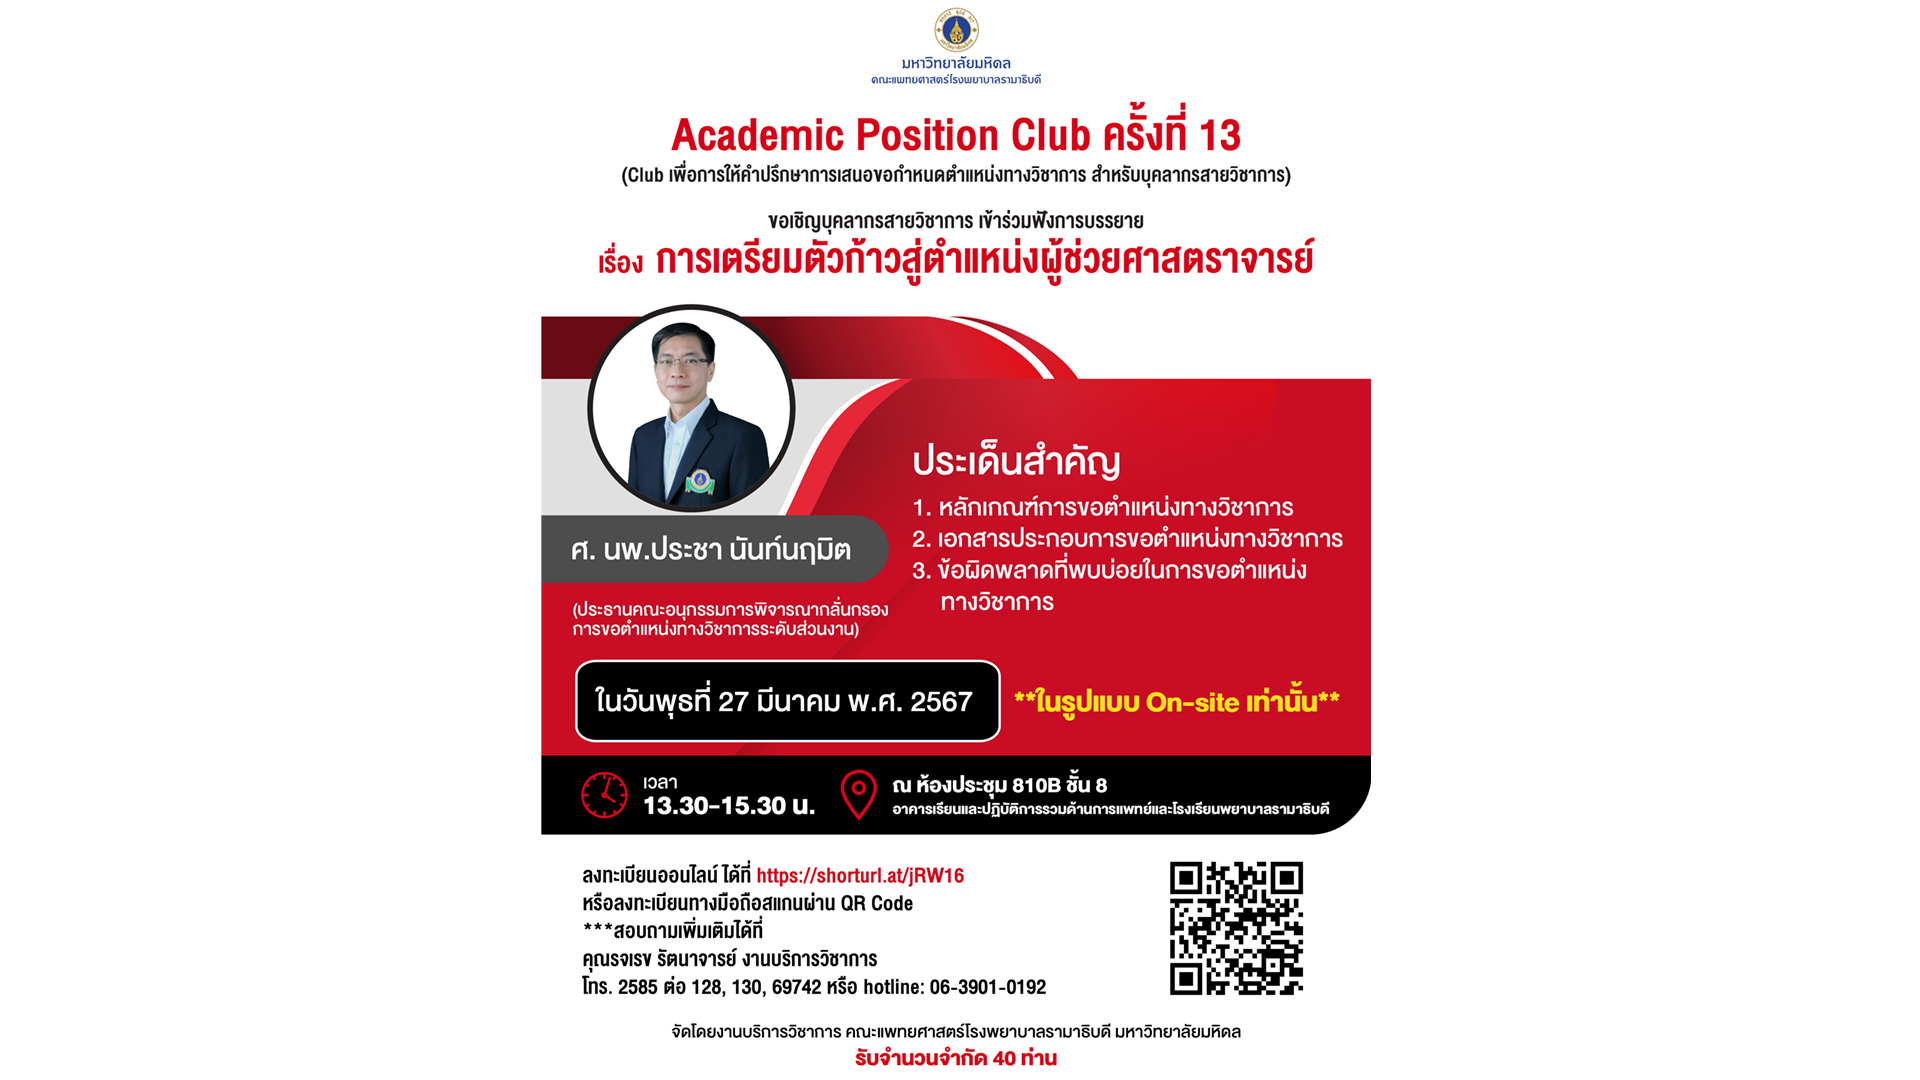 Academic Position Clup ครั้งที่ 13